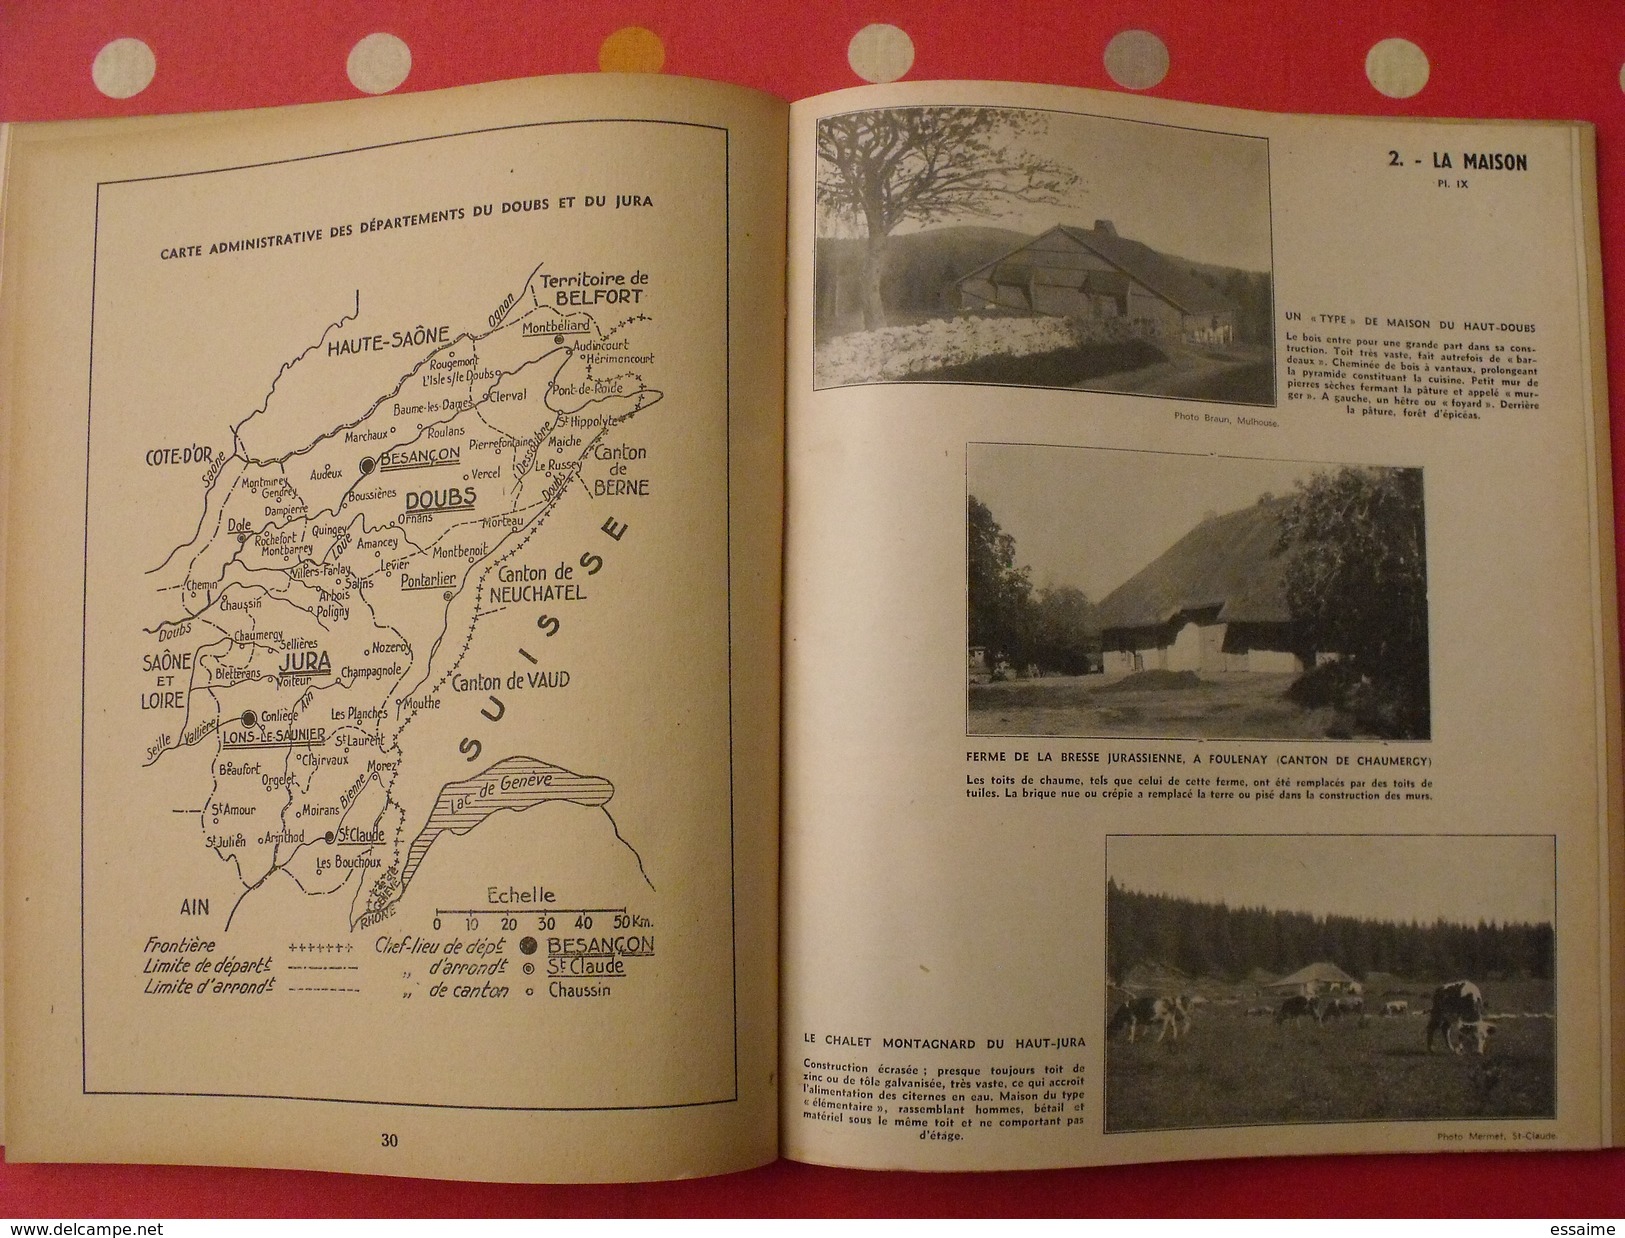 petite géographie du Doubs et du Jura. L. Martin. 1944